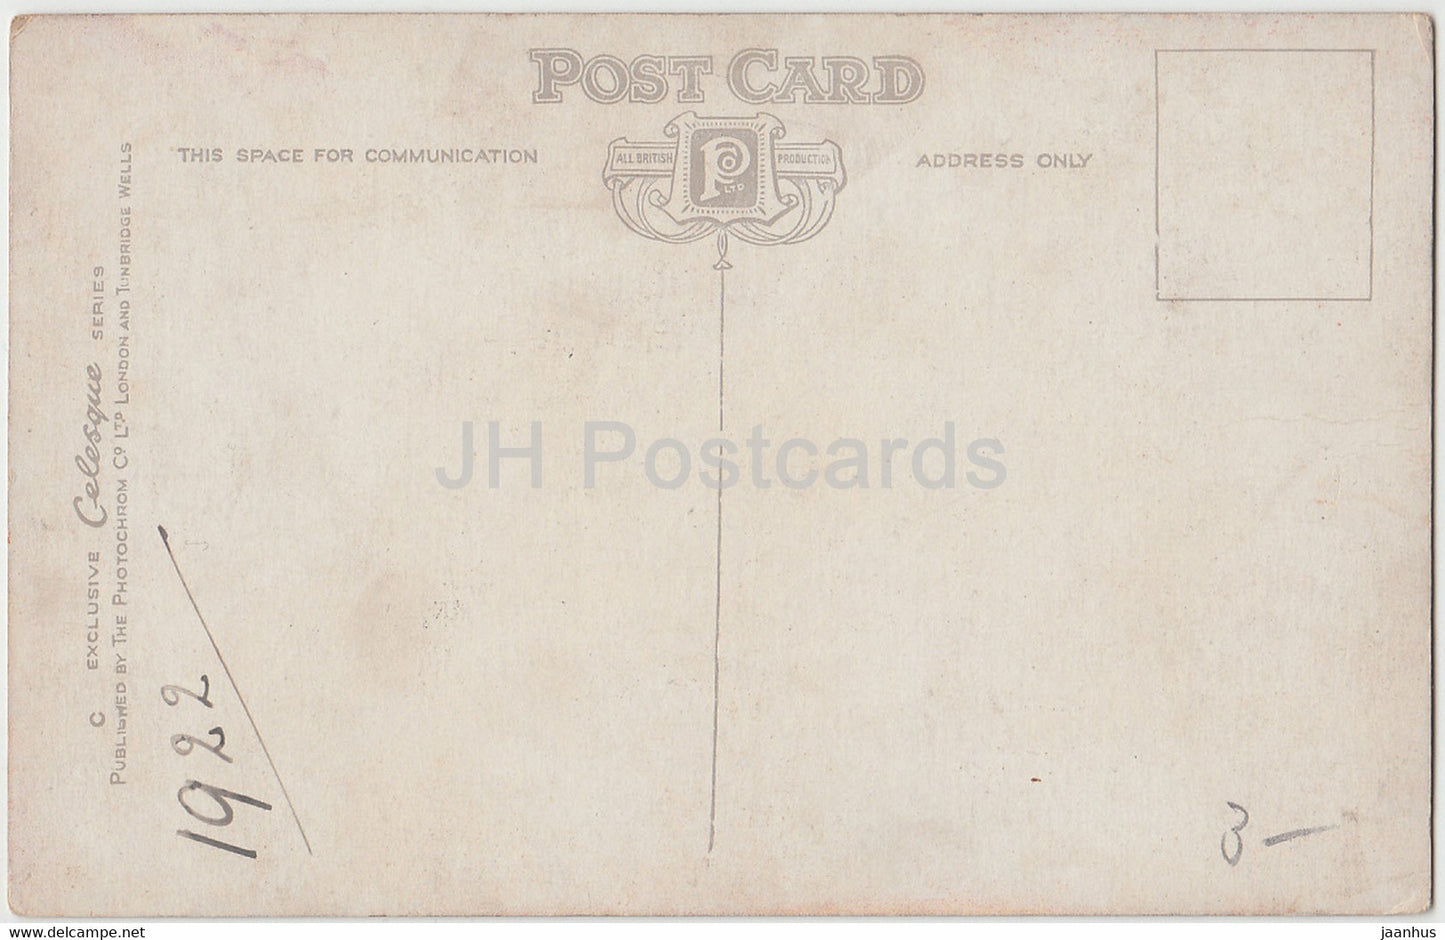 Ein Devonshire Lane - Schaf - alte Postkarte - 1922 - England - Vereinigtes Königreich - gebraucht